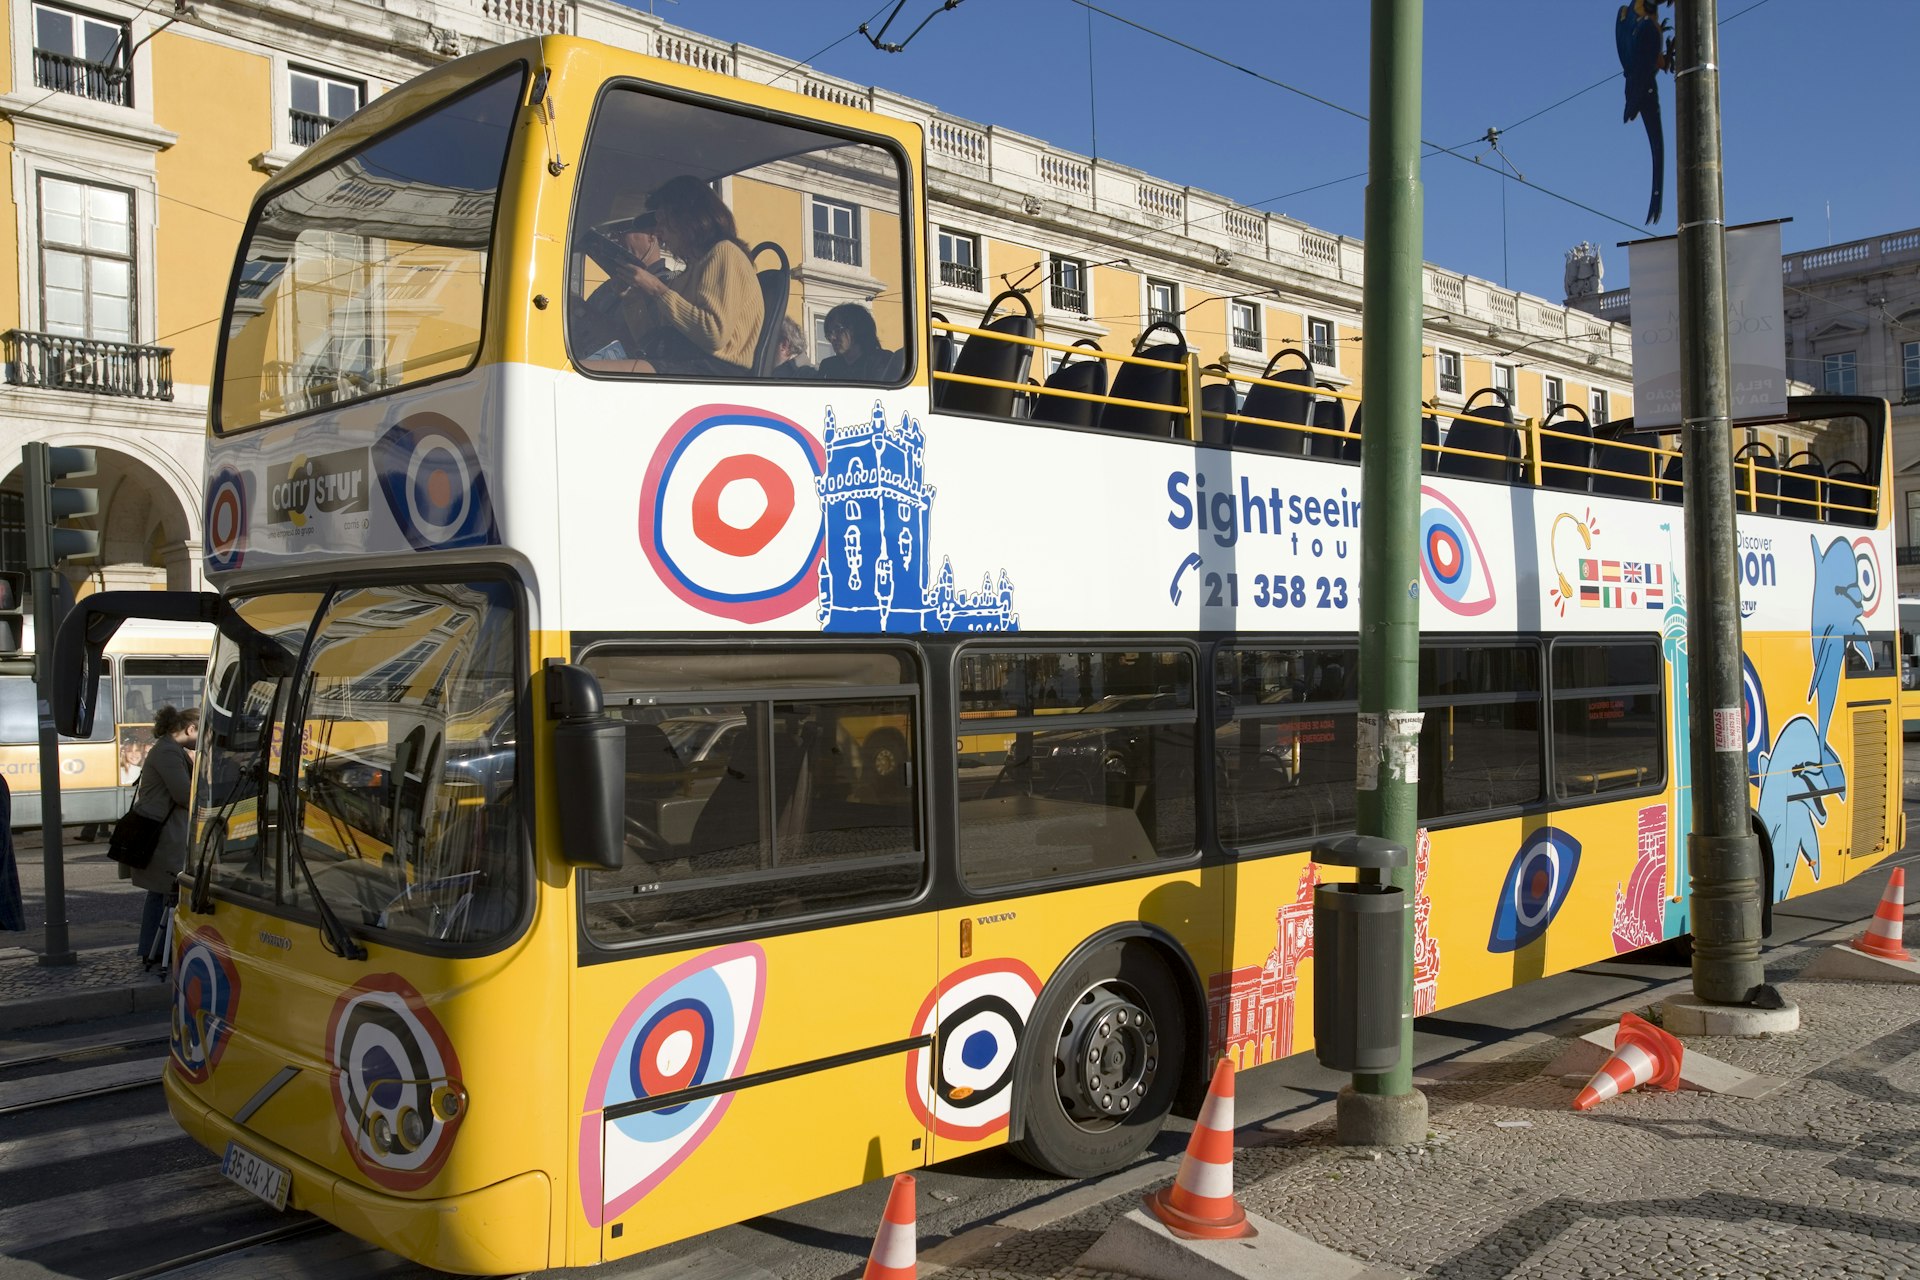 An open-top bus in Lisbon